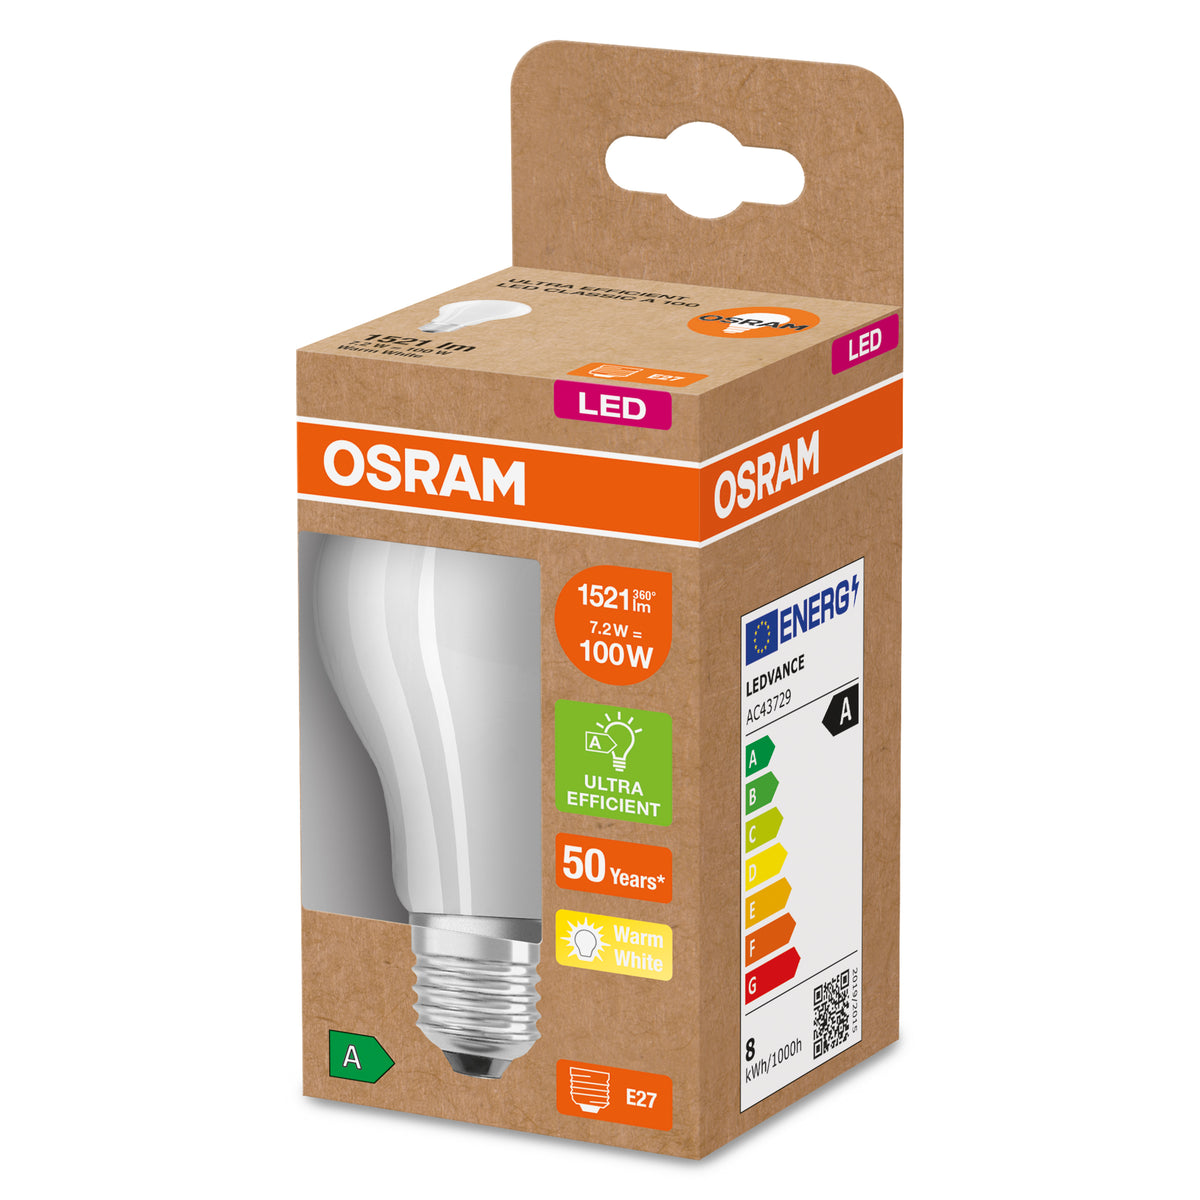 Osram ledlamp ultrazuinig E27 7,2W